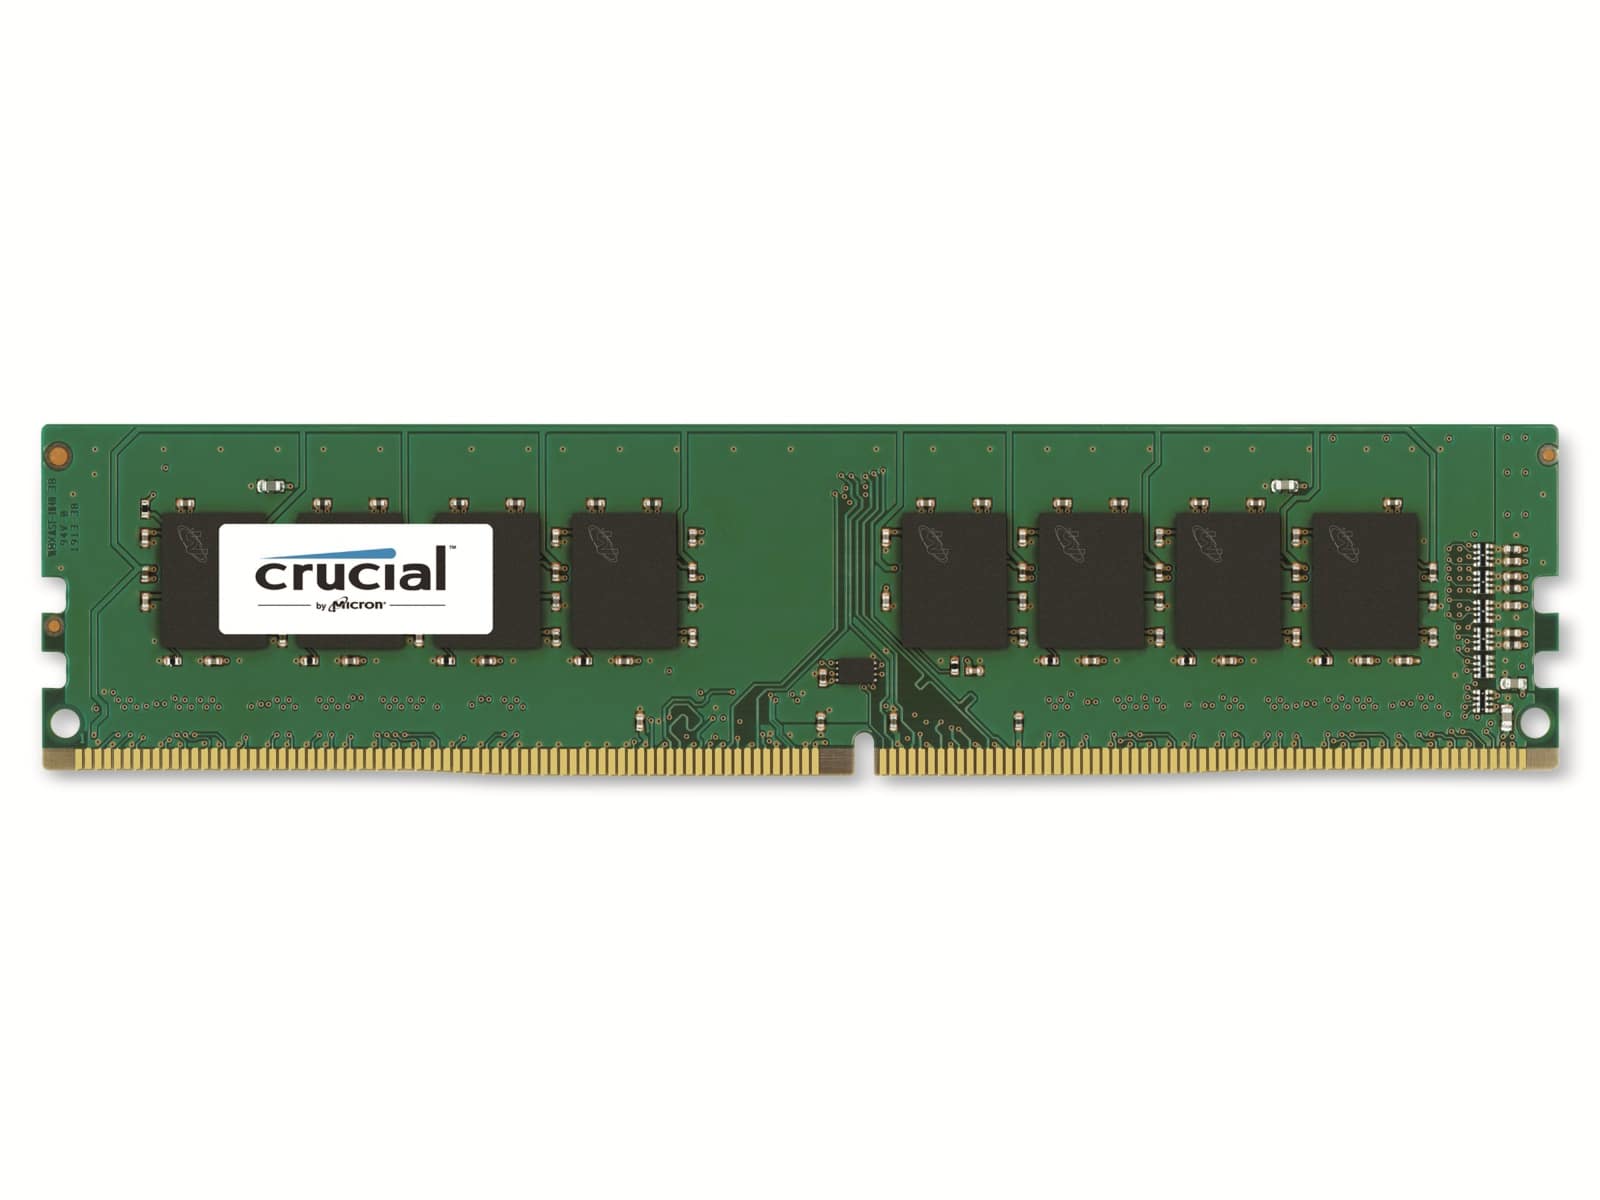 CRUCIAL Arbeitsspeicher CT4G4DFS824A, DDR4, 4GB